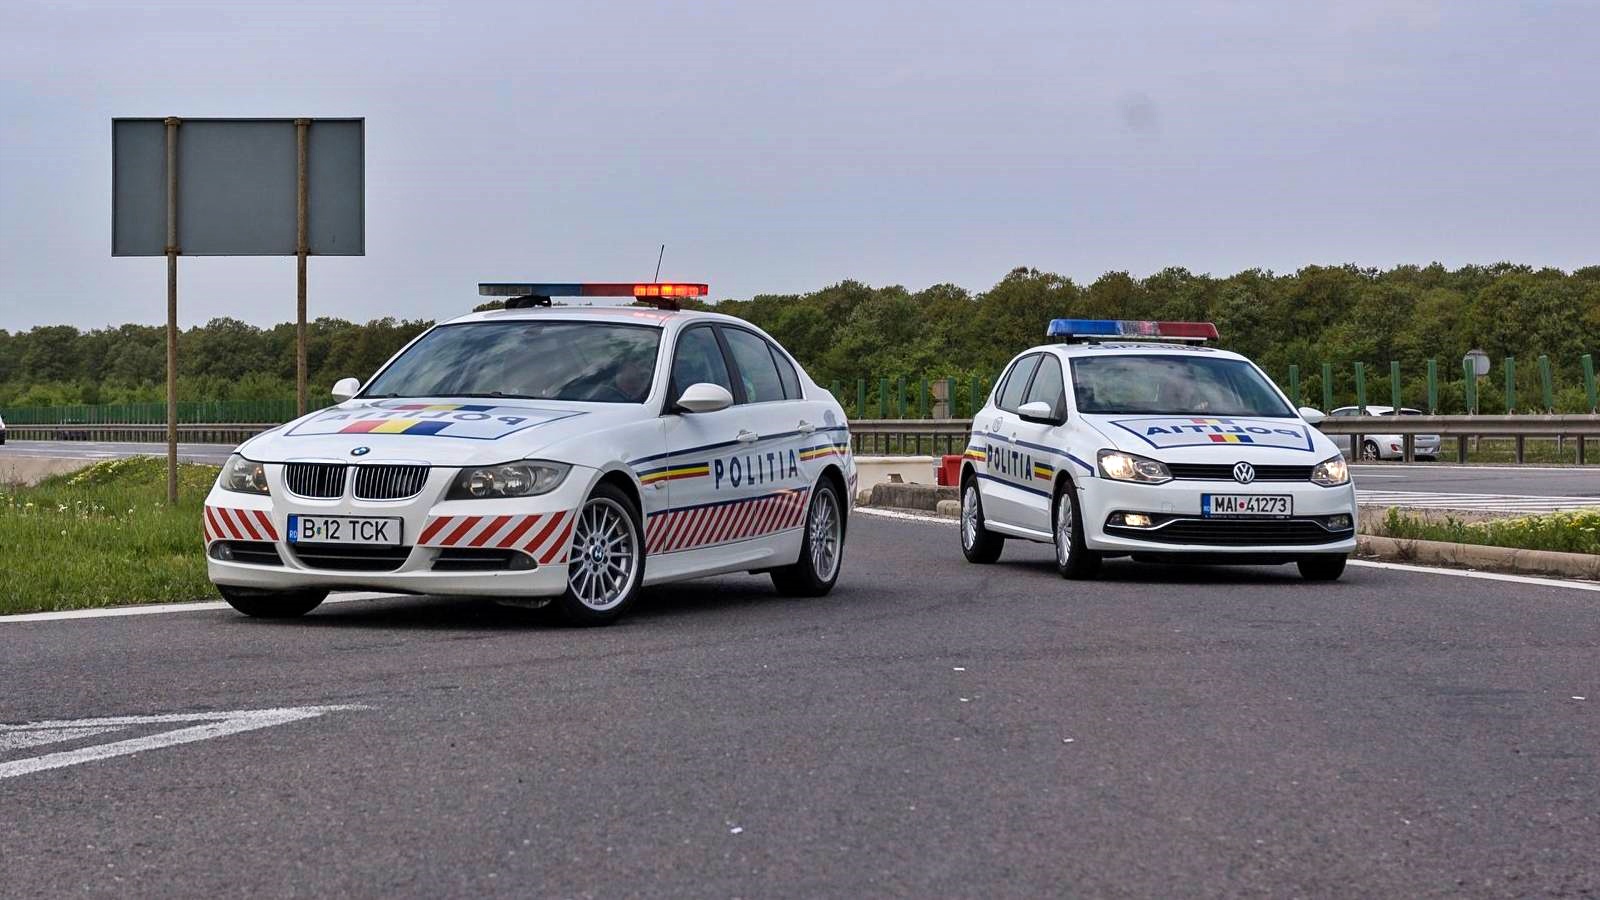 Ny varning Rumänska polisens vägtrafik